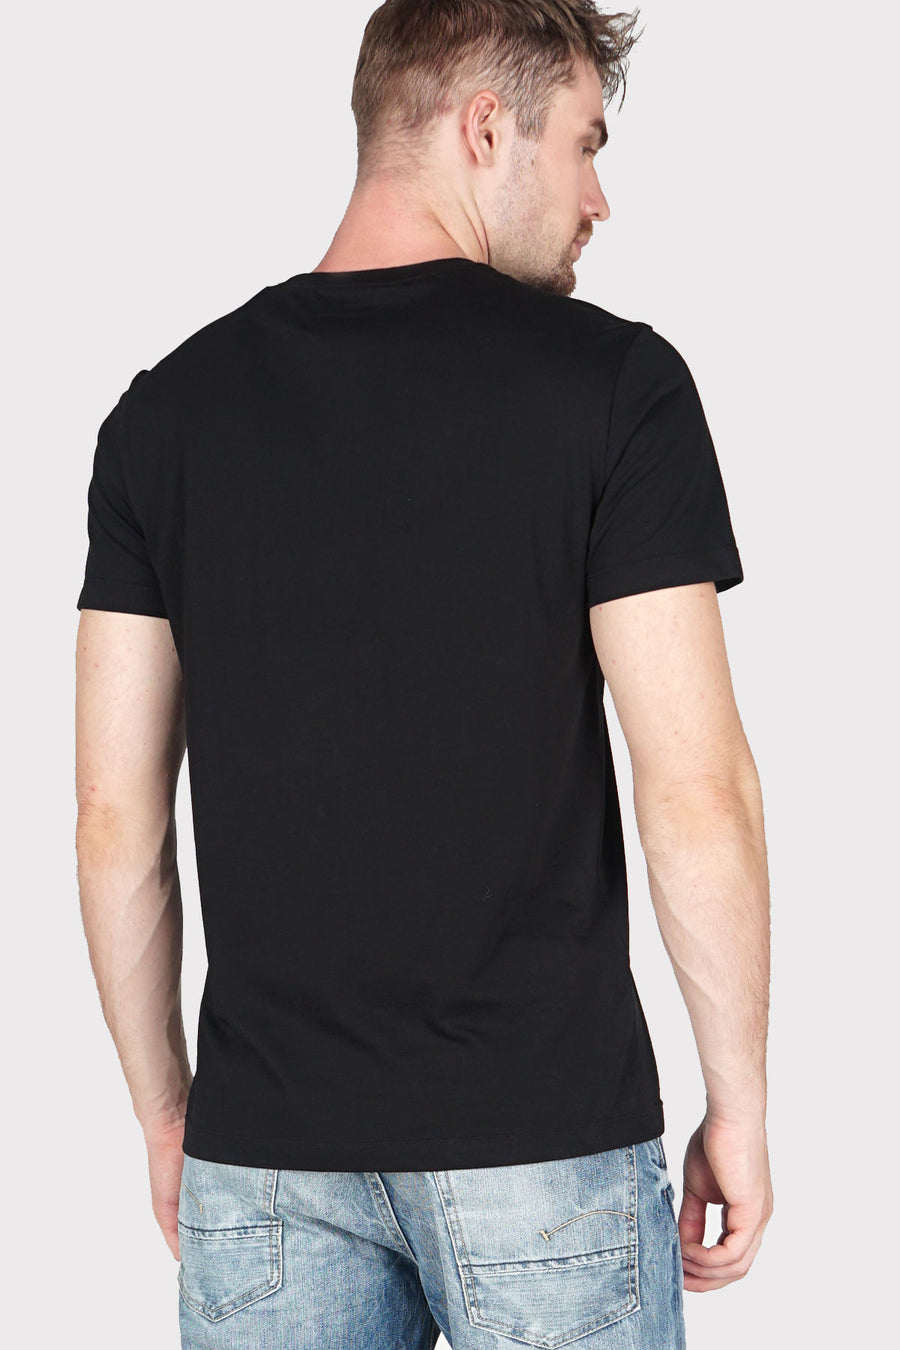 T-Shirt Lengan Pendek Unrest Black